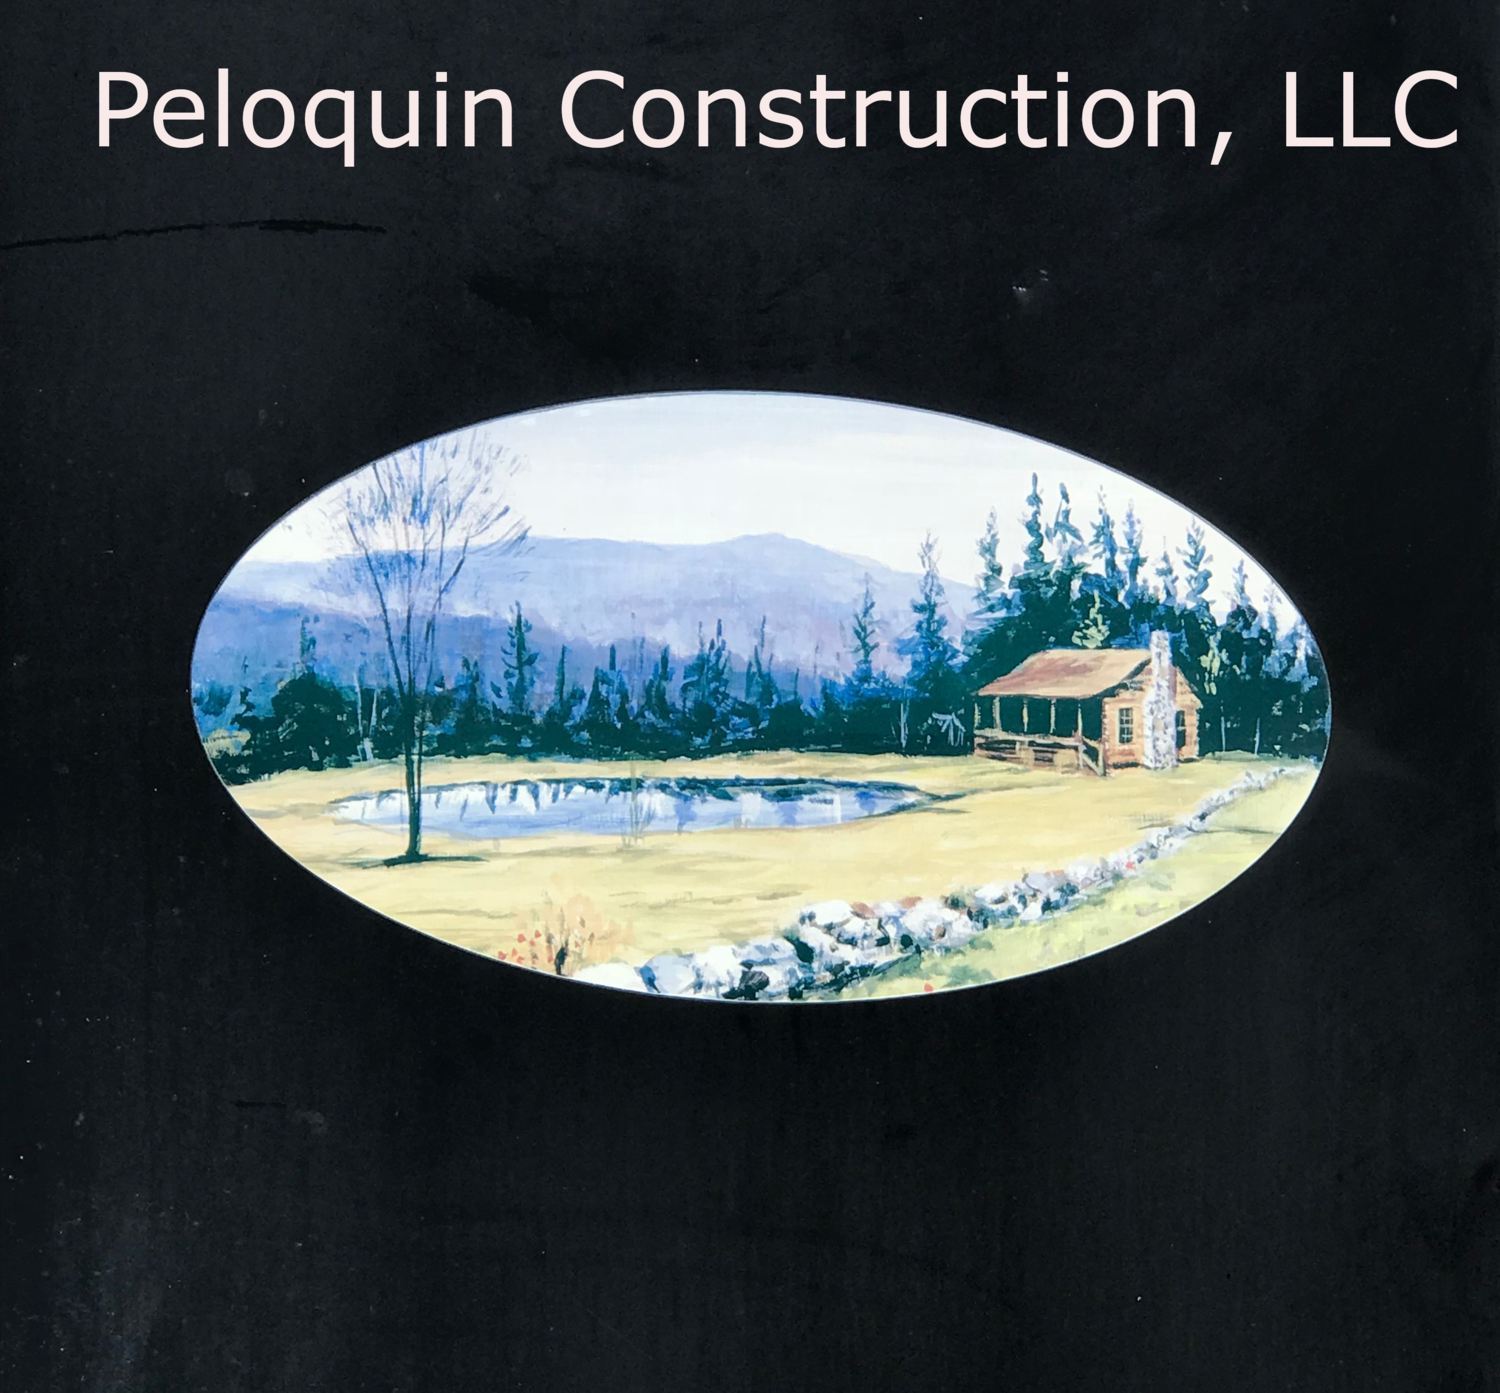 Peloquin Construction, LLC